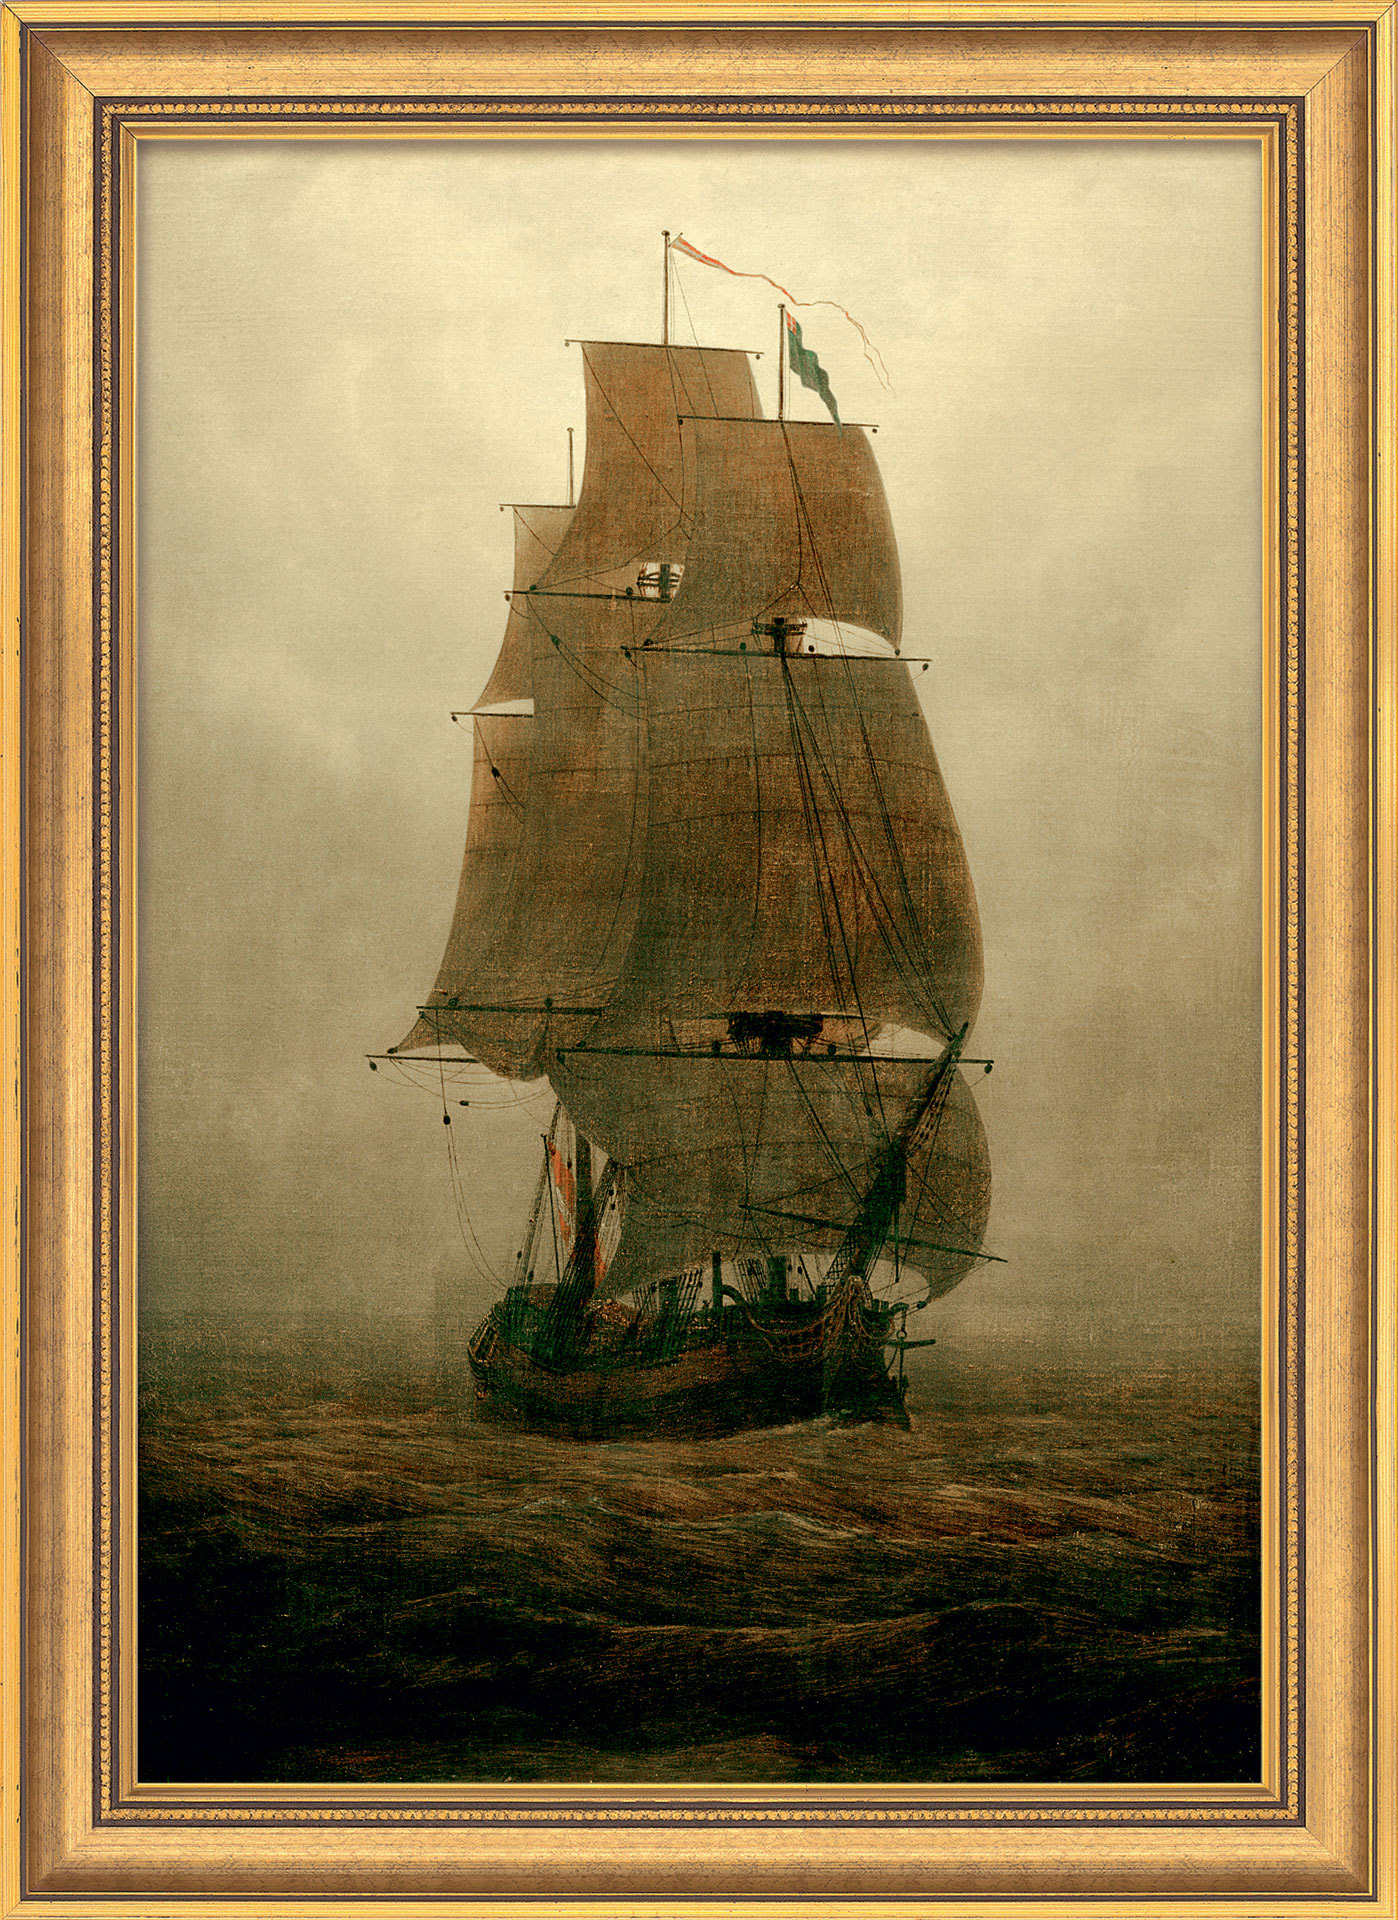 Caspar David Friedrich: Bild 'Segelschiff im Nebel' (1815), gerahmt